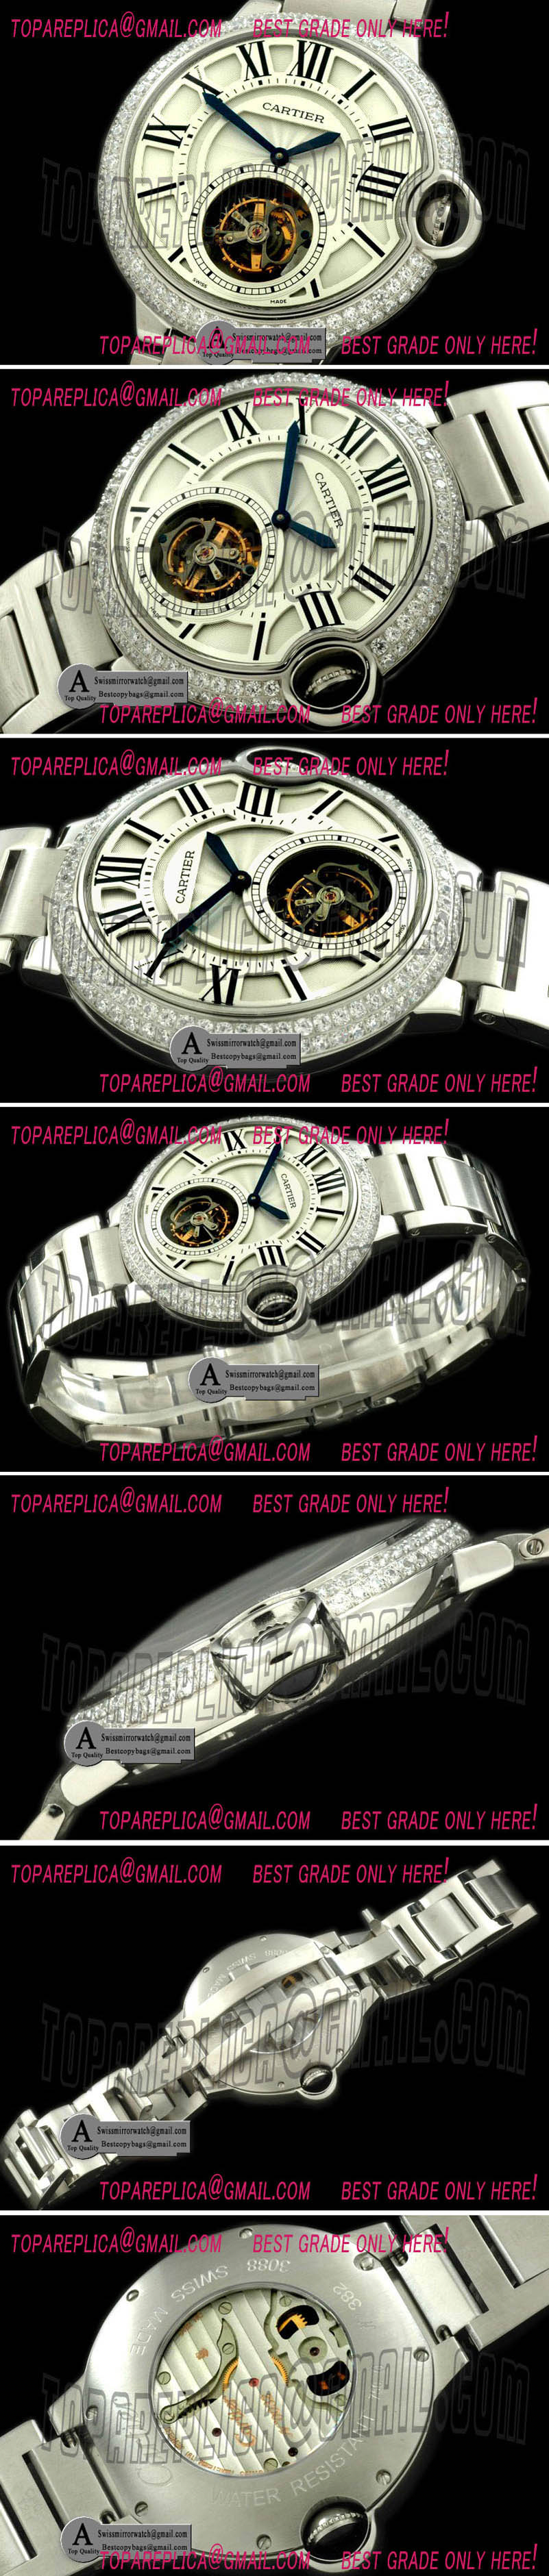 Cartier Ballon de Cartier XL Tourbillon SS/SS White F-Tourbi Replica Watches